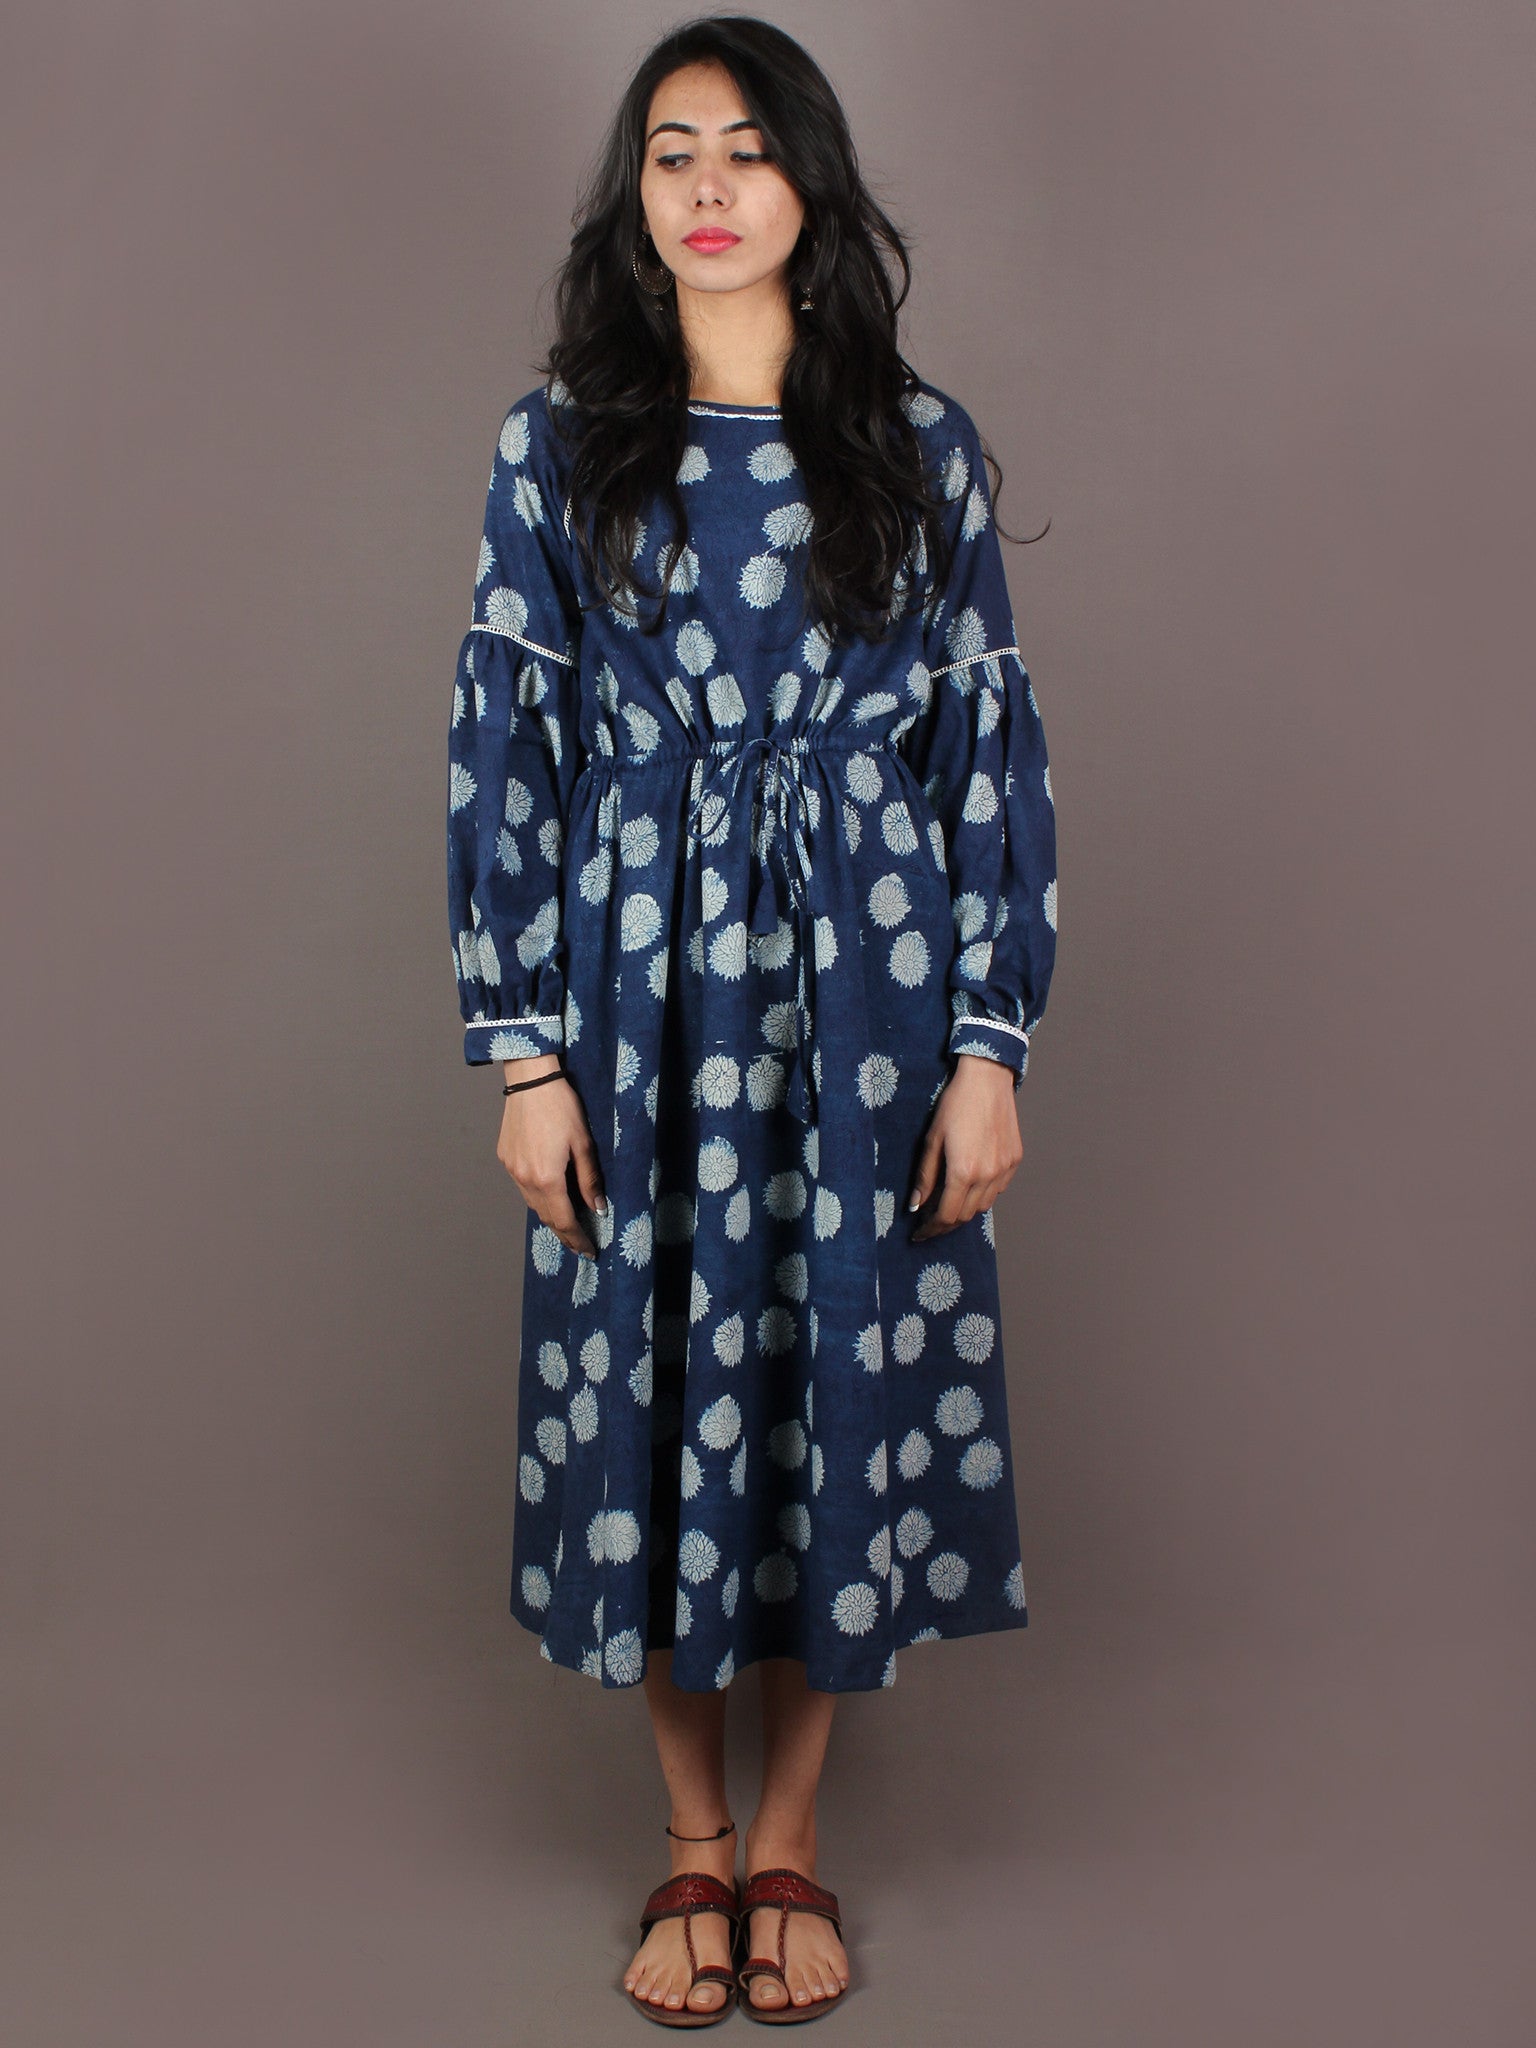 Pure cotton midi dress Kalamkari print in maroon xs to 3xl